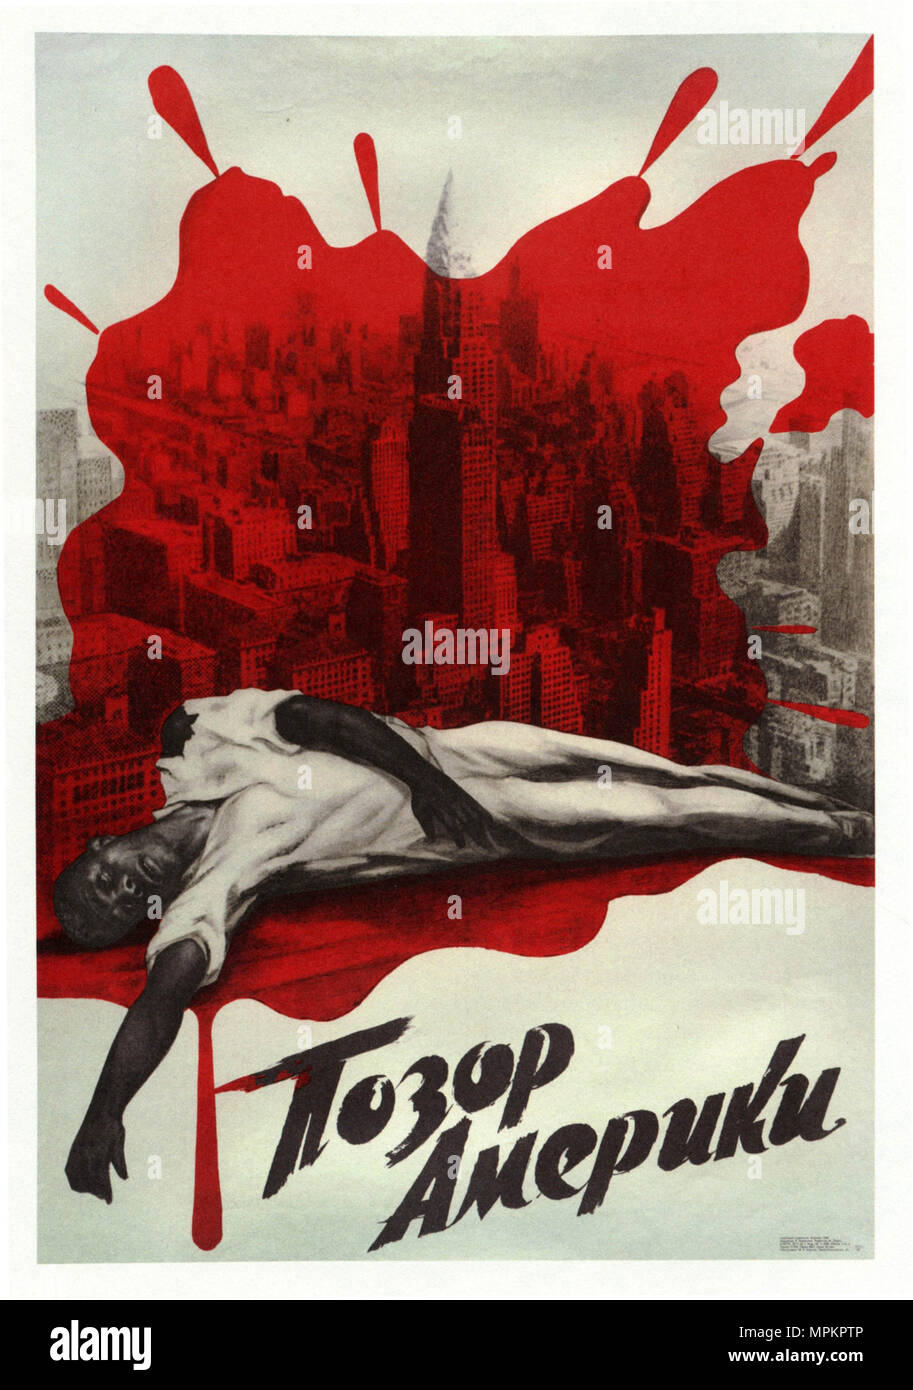 Affiches de propagande de l'URSS Vintage - la honte de l'Amérique, 1968, Viktor Koretsky Banque D'Images